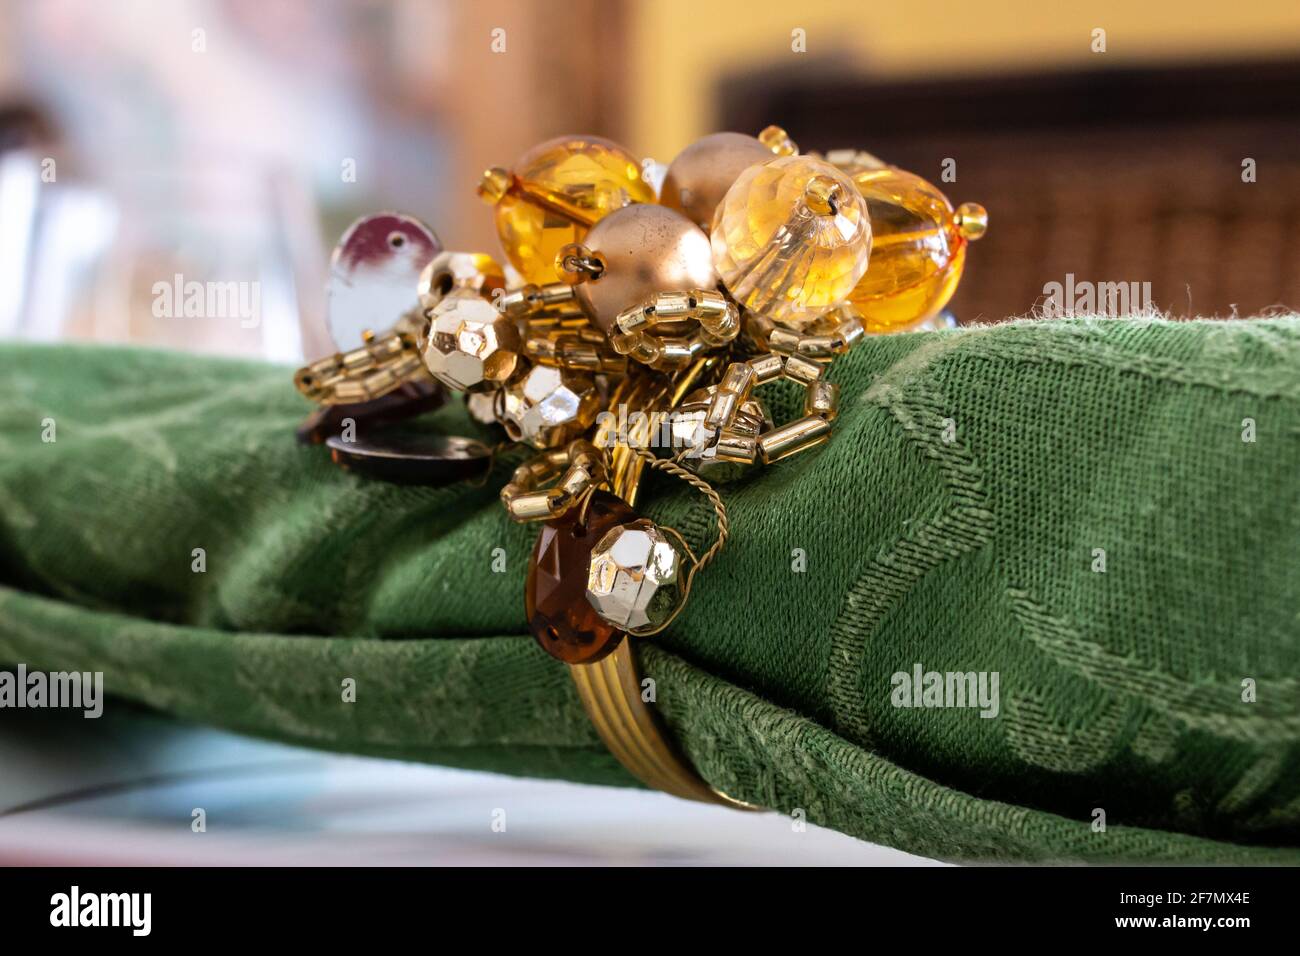 Eine aufgerollte grüne Serviette mit einem goldenen Serviettenhalter mit Bommel, horizontal auf einem fein dekorierten Tisch in Erwartung eines Geburtstagsessens. Februar 2021. Stockfoto